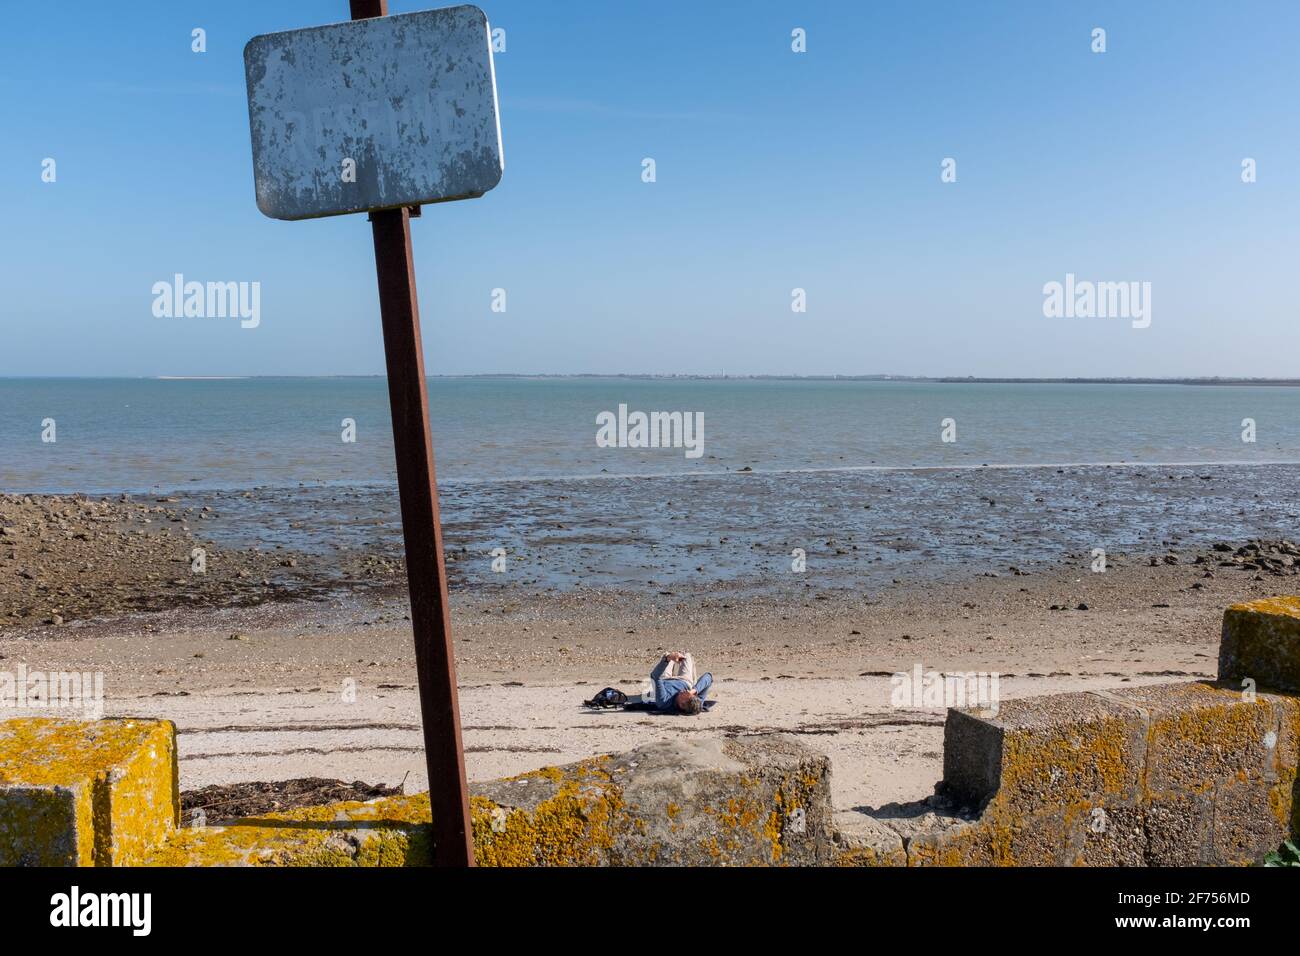 ARS-en-Ré, France - 24 février 2020 : une personne envoie un SMS sur une plage prise de loin sur l'île de Ré par un beau jour de fin d'hiver Banque D'Images